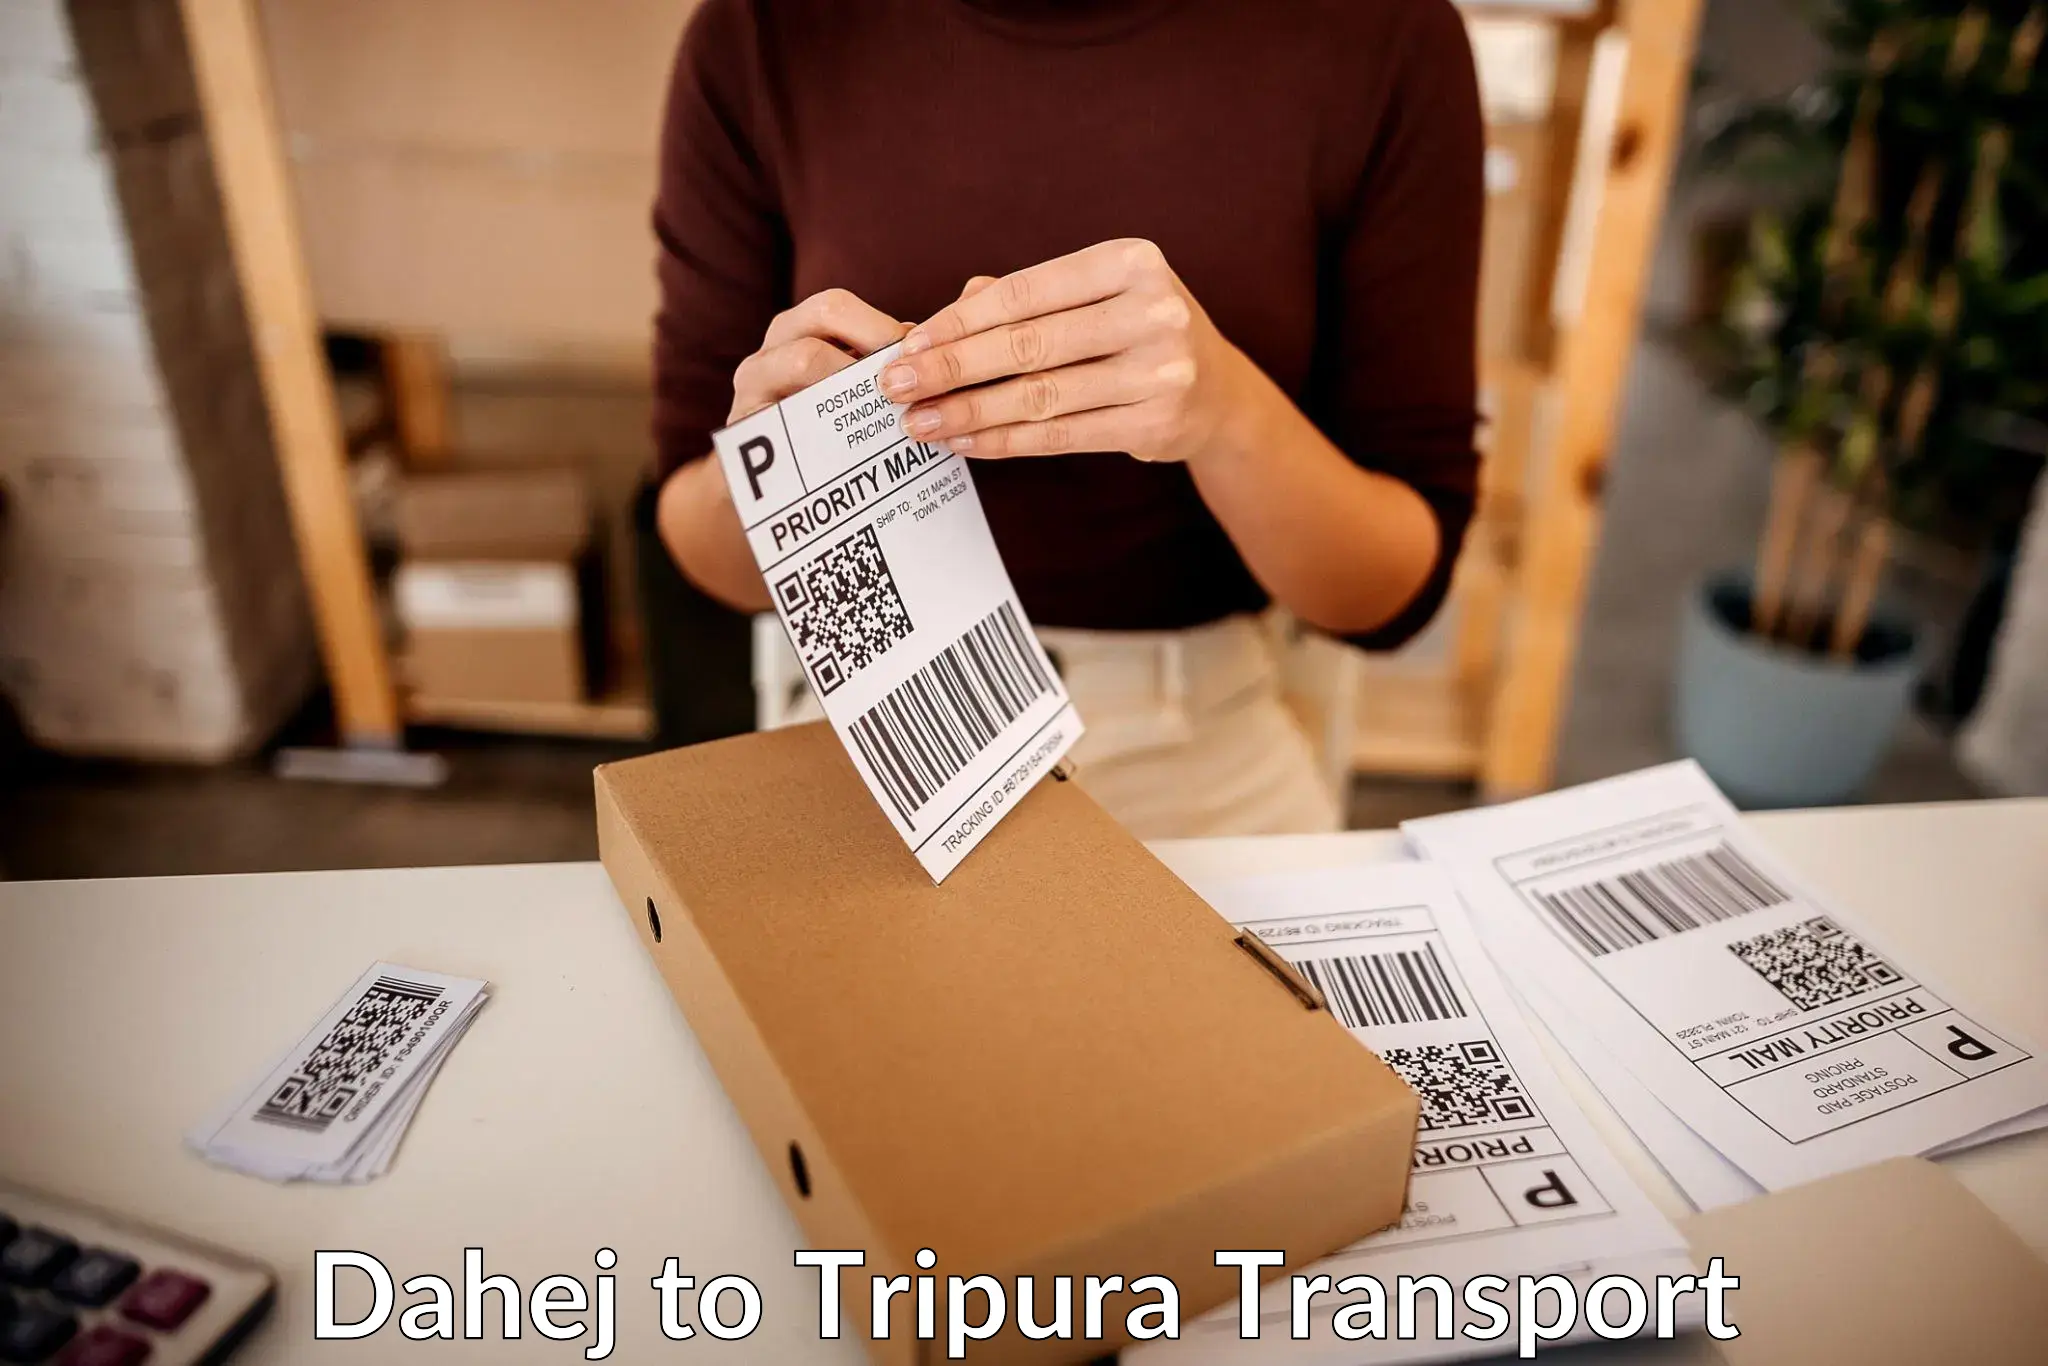 Delivery service Dahej to South Tripura